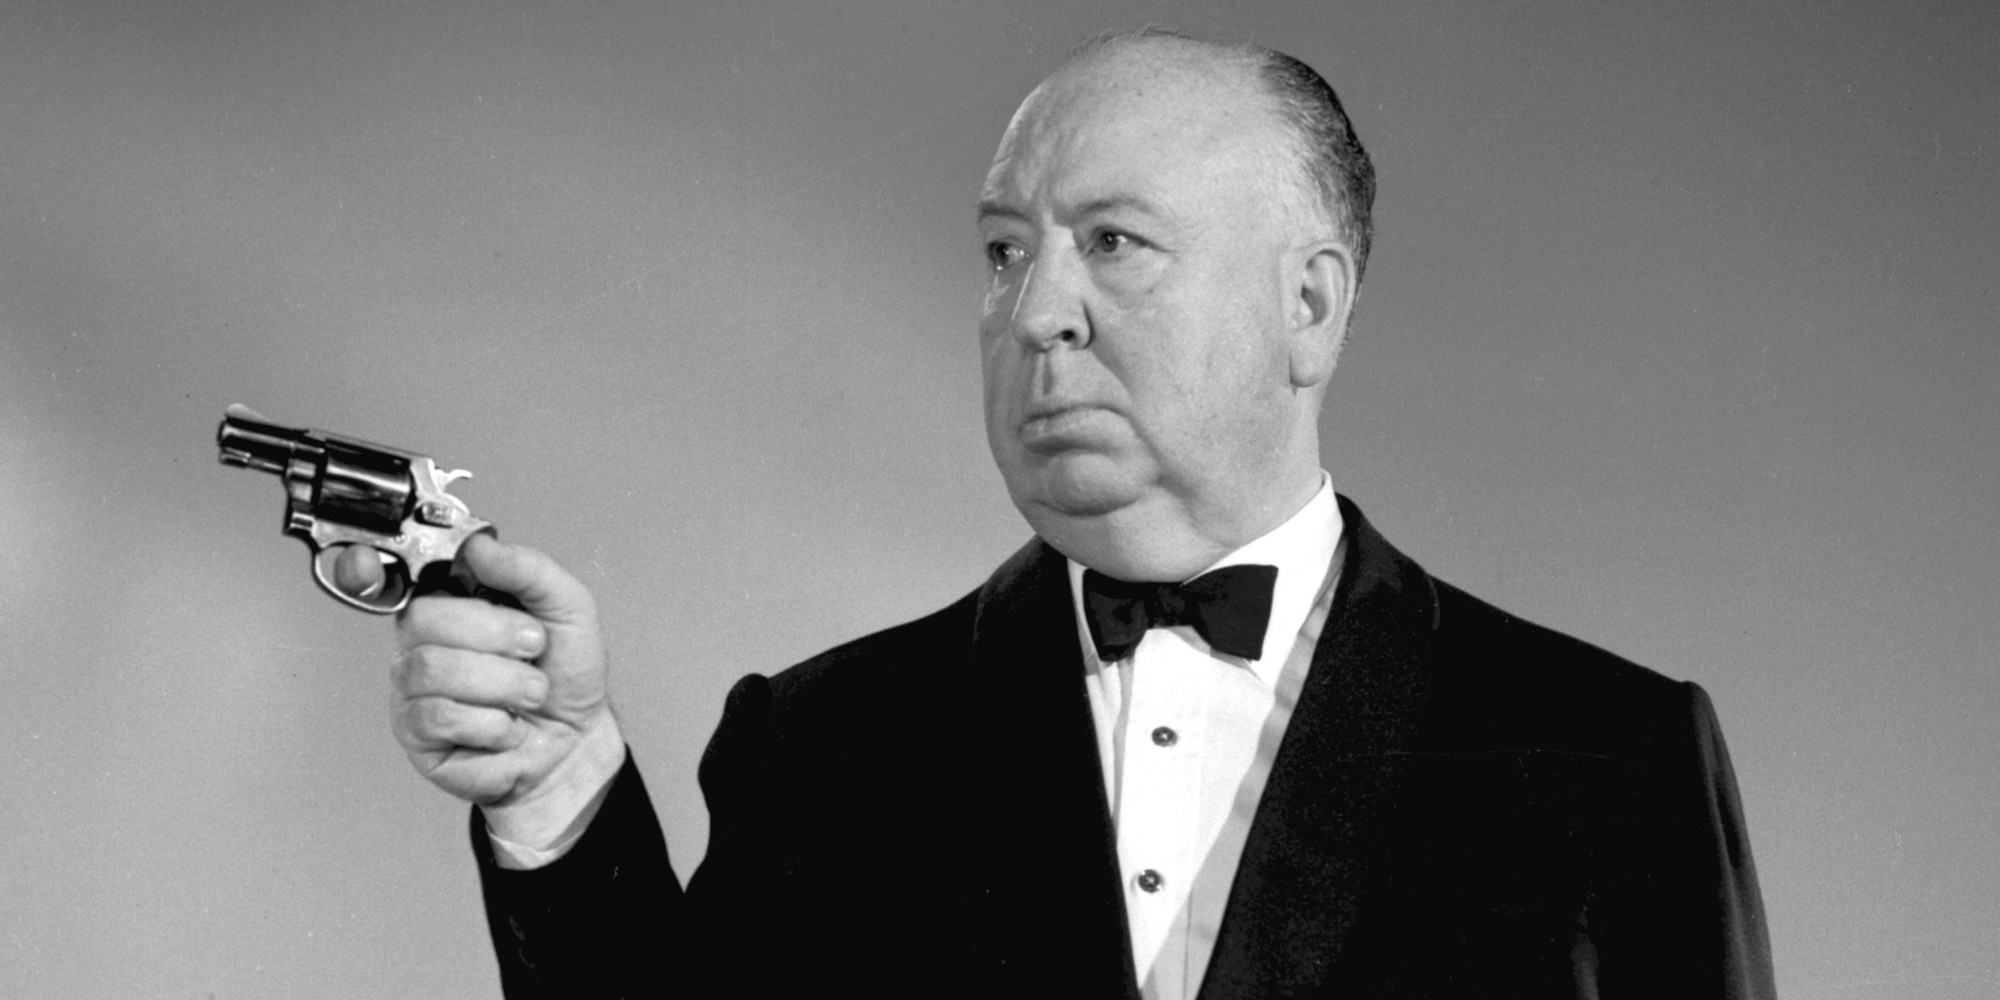 Vemos uma foto em preto e branco do Diretor Alfred Hitchcock, falecido em 1980. Ele é um homem branco, calvo e robusto que usa um smoking preto e aponta uma pistola para a nossa esquerda